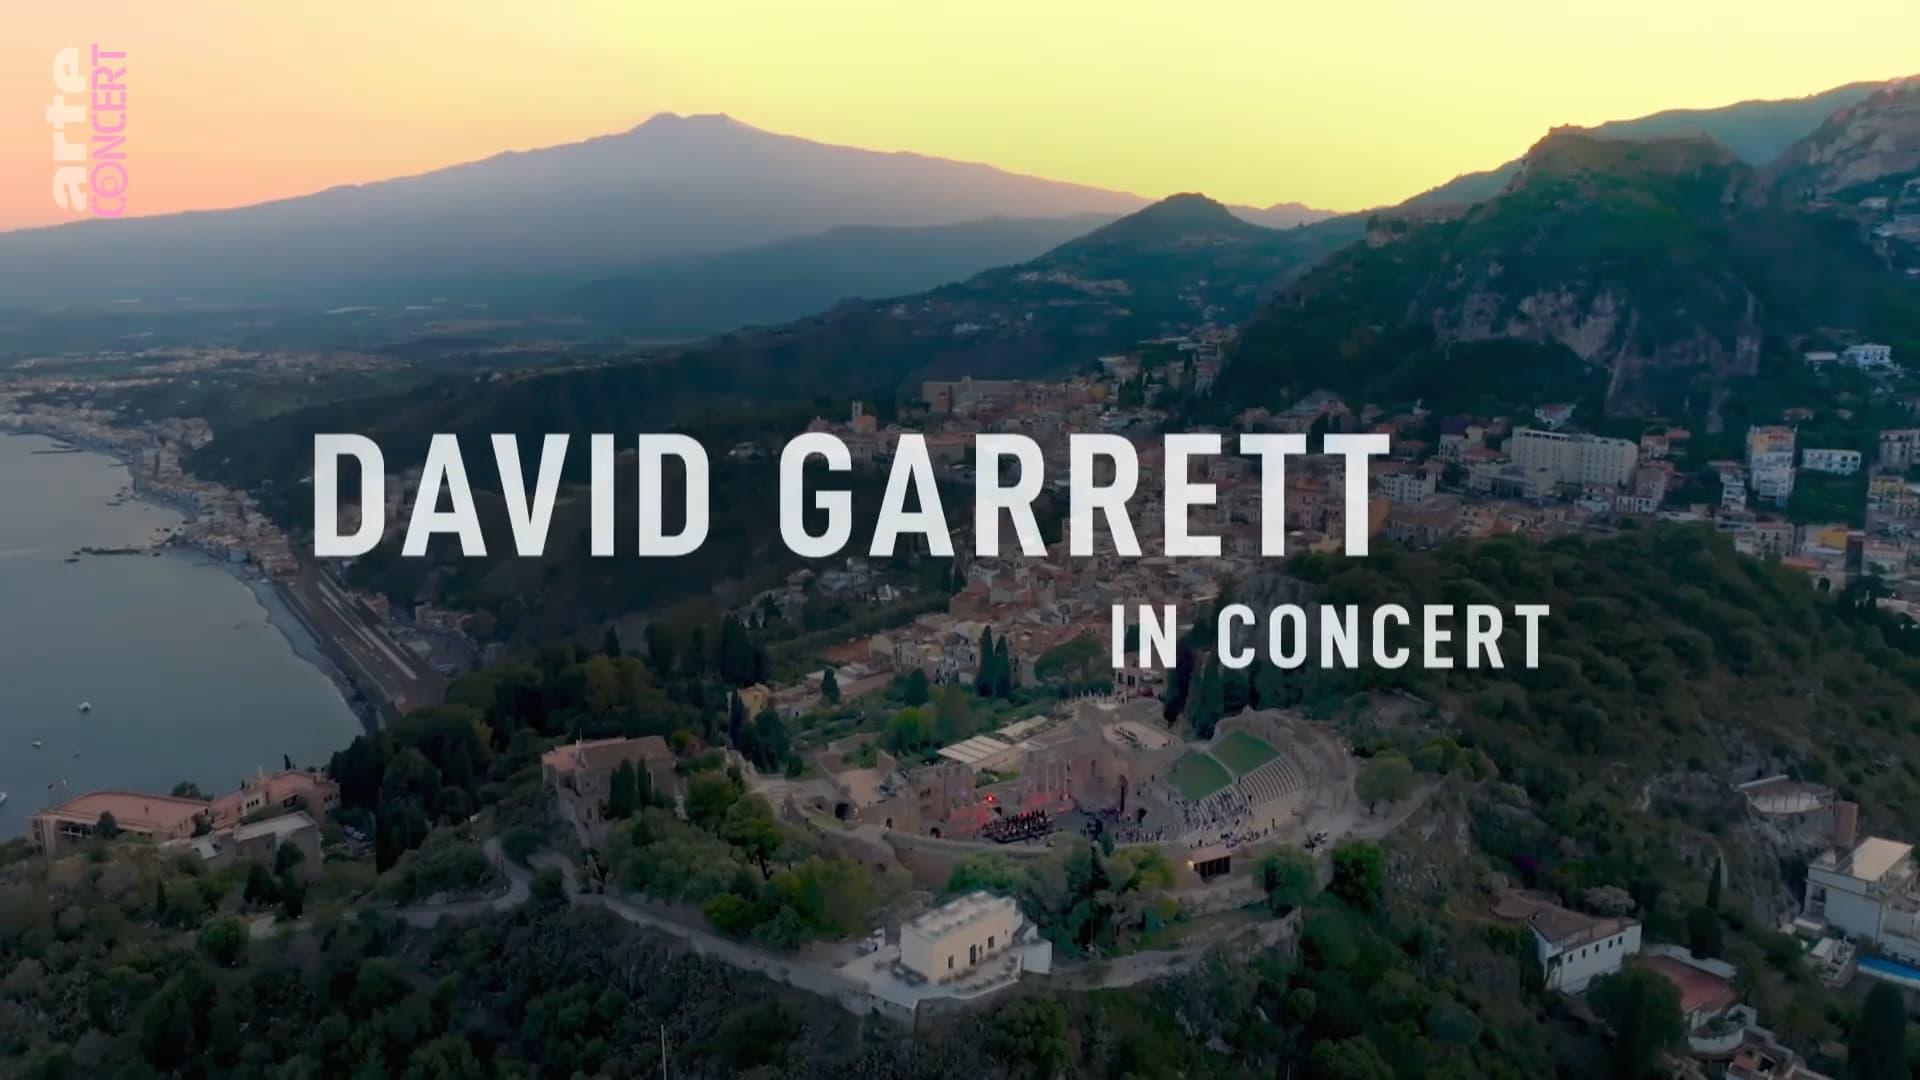 David Garrett in concert - Auf dem antiken Theater in Taormina auf Sizilien backdrop